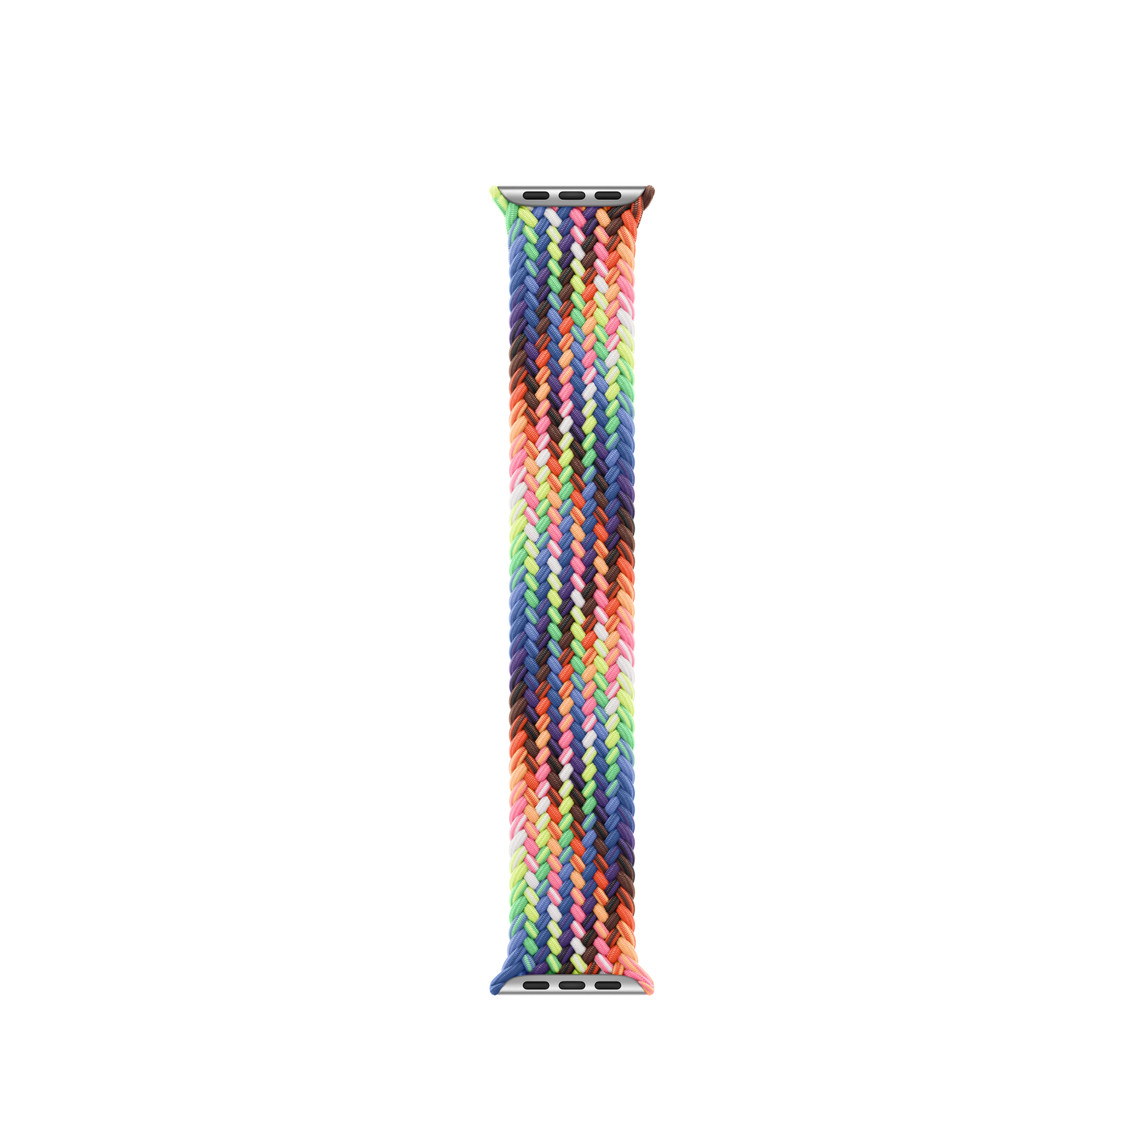 Correa uniloop trenzada Edición Orgullo, hecha de hilos tejidos de colores fluorescentes inspirados por la bandera arcoíris del Orgullo, sin hebillas ni cierres